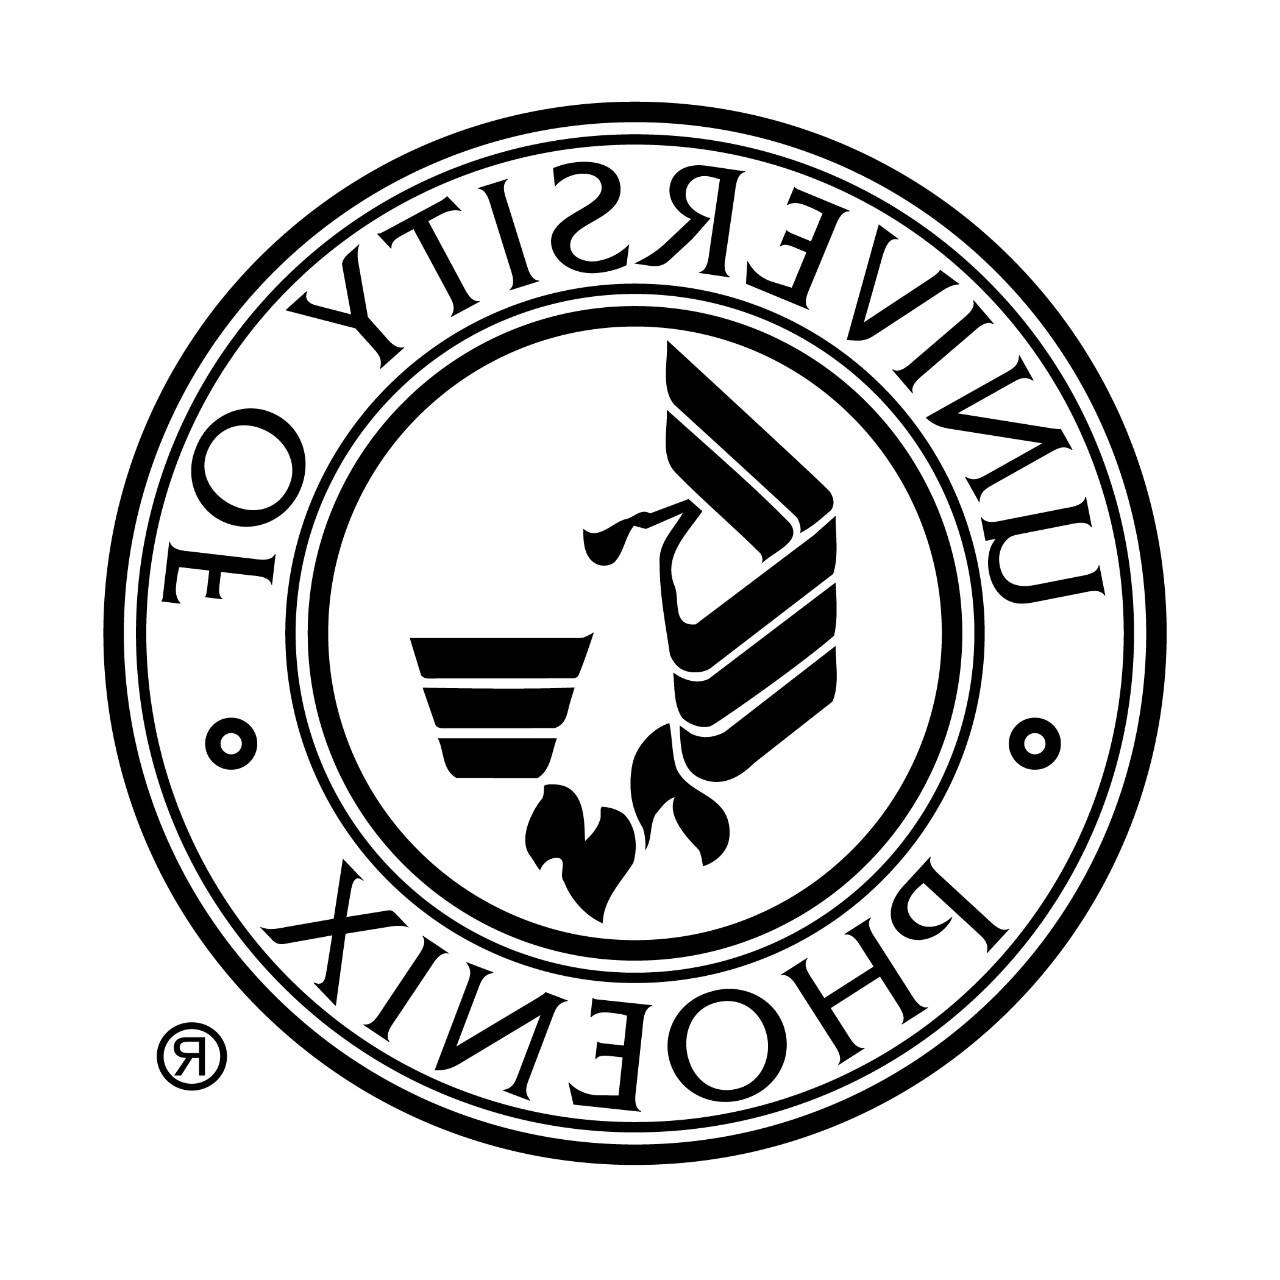 UOPX medallion logo left